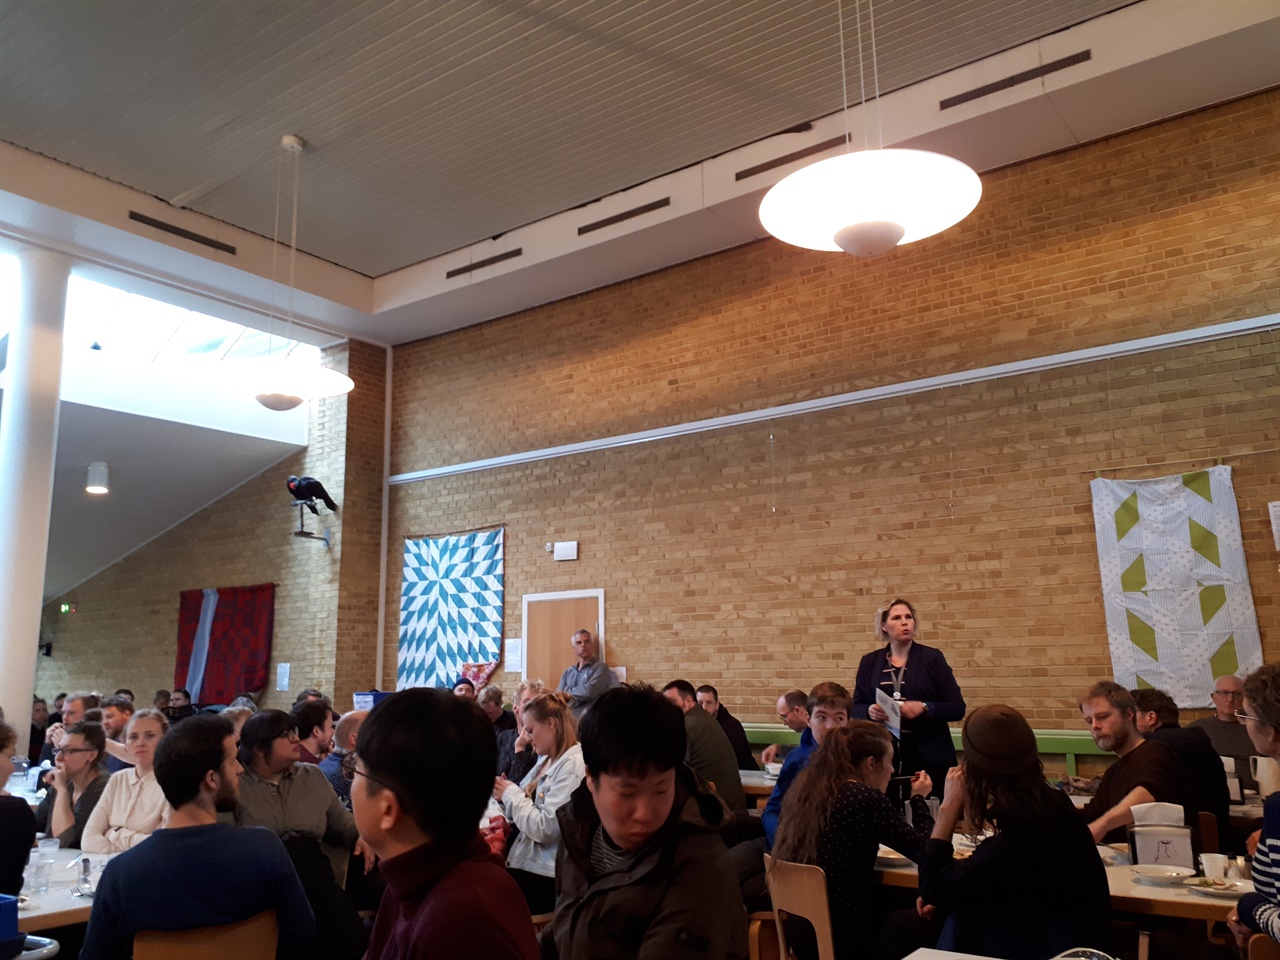 덴마크의 한 교사 양성 학교 식당에서 모든 학생들과 교직원들이 일제히 식사를 멈추고 한 구성원의 발언에 집중하고 있다. 